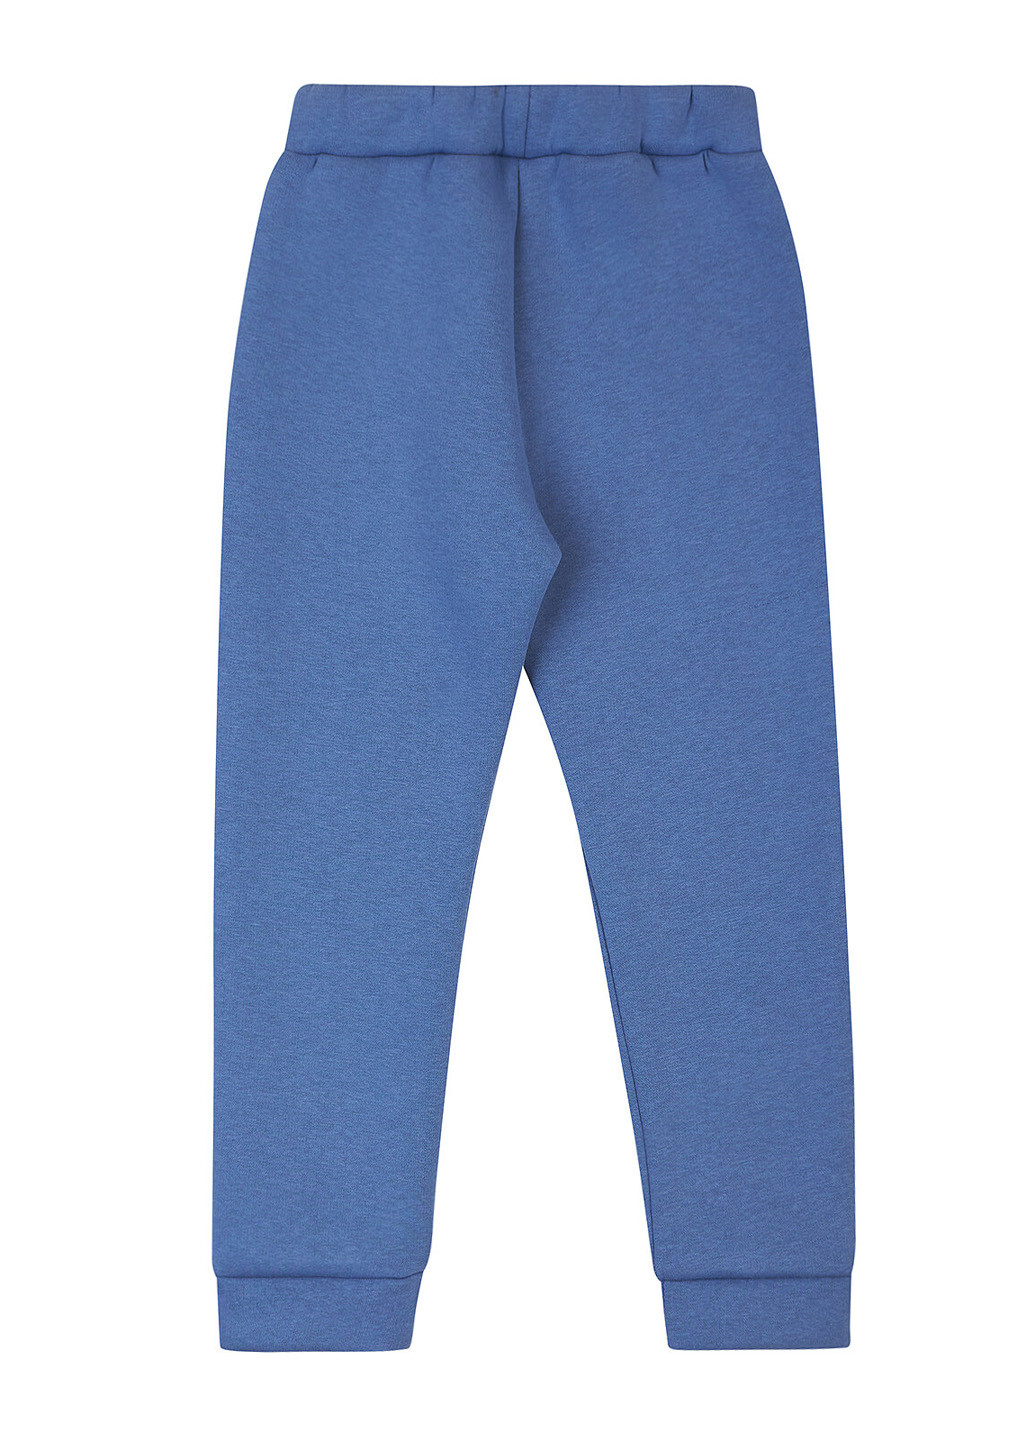 Синие кэжуал демисезонные брюки джоггеры Ляля